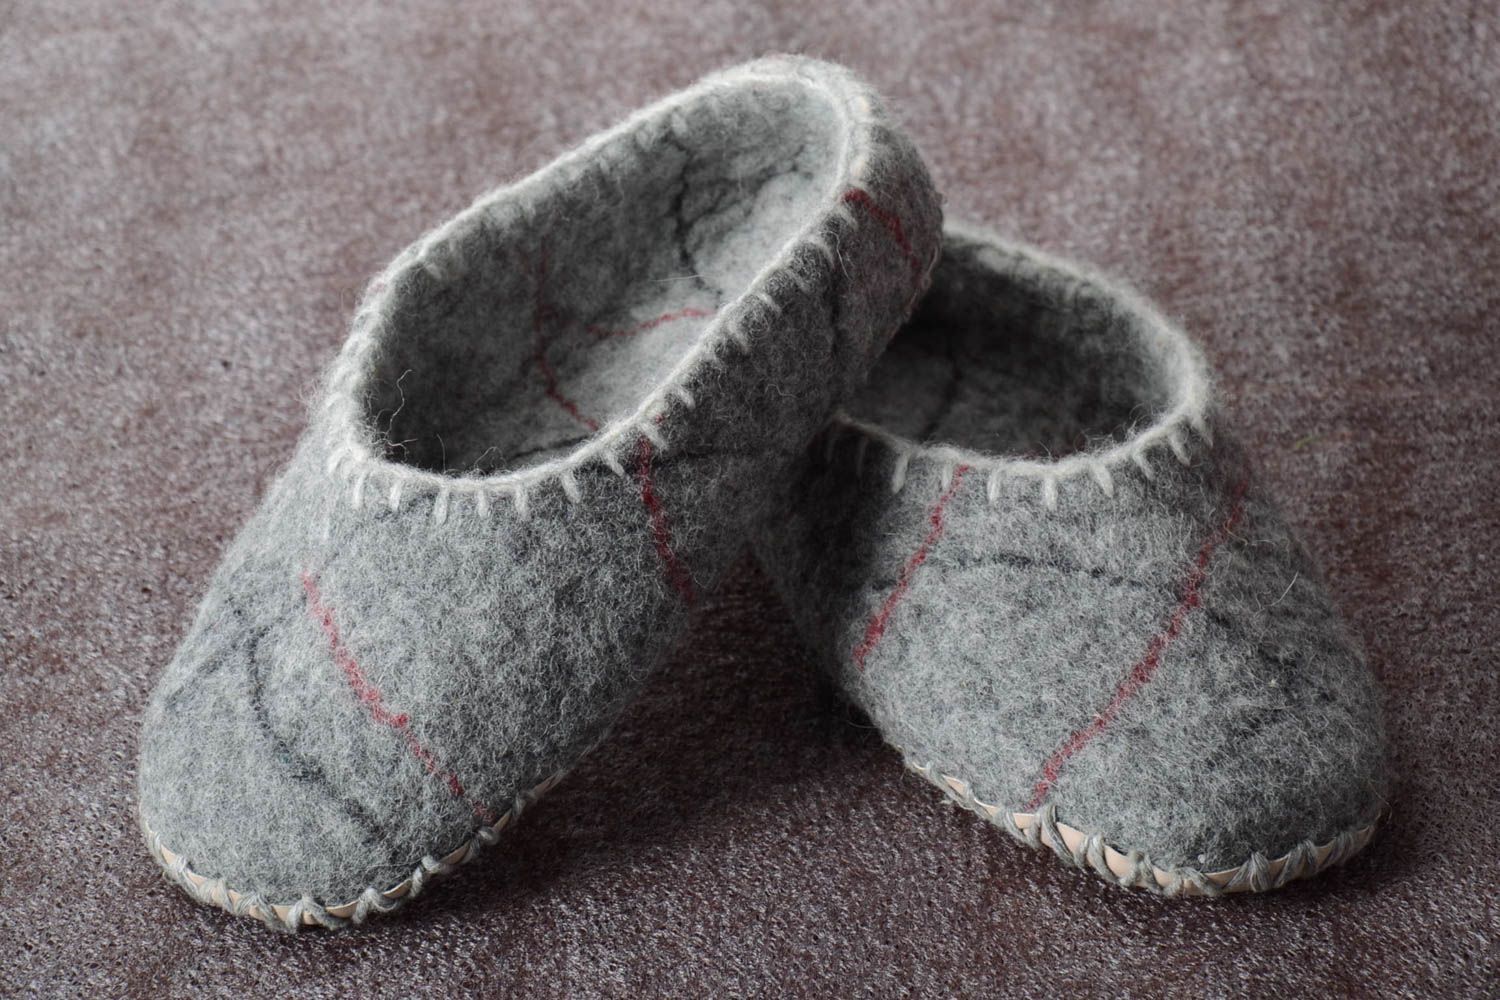 Handmade Hausschuhe Filz Damen Pantoffeln warme Hausschuhe gefilzt grau toll foto 1